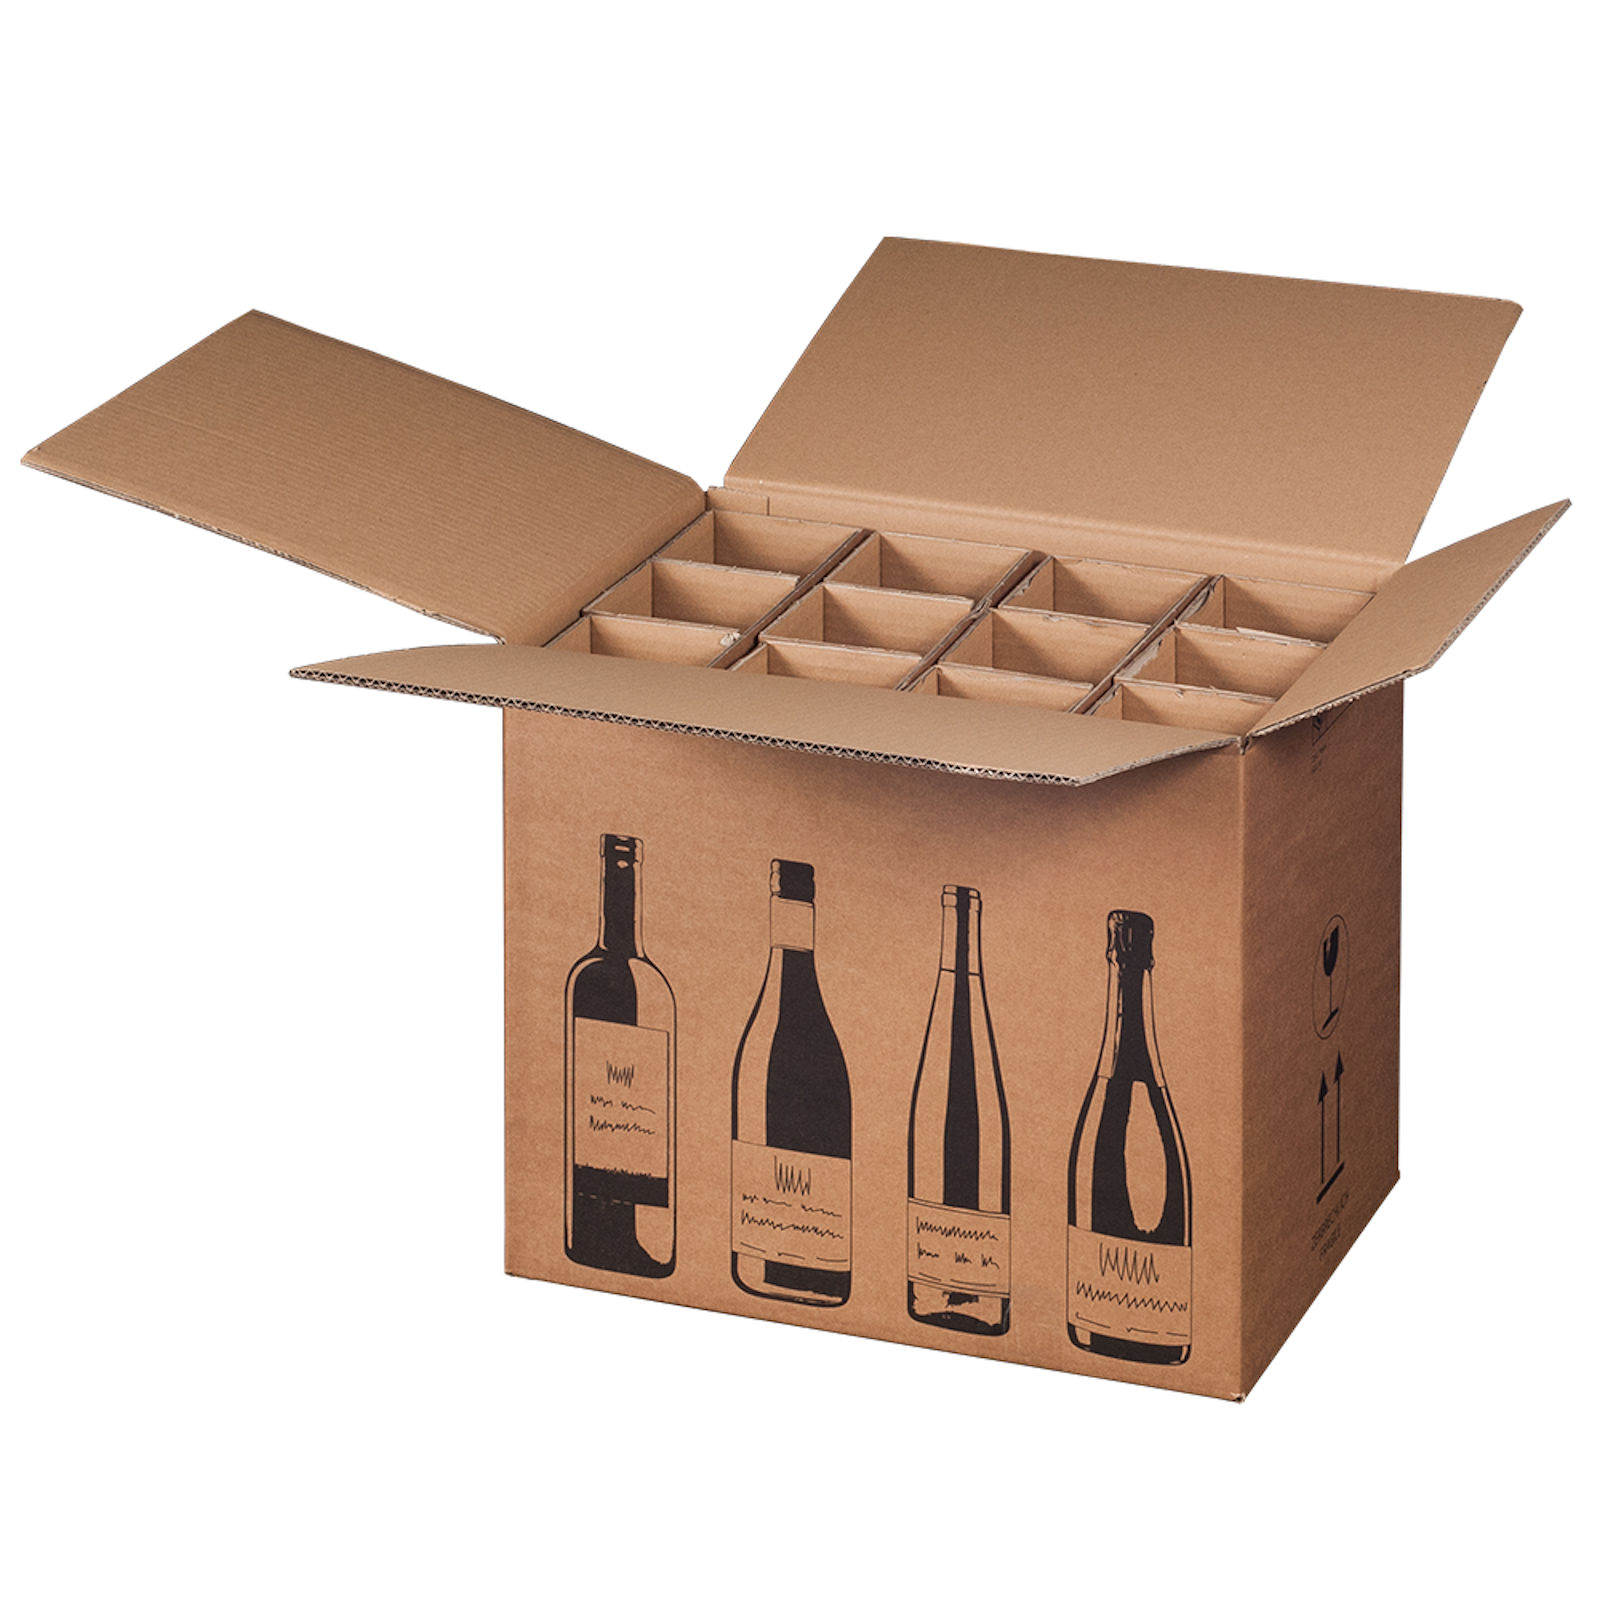 Weinversandkarton für 12 Flaschen Wein Karton Flaschen DHL UPS zertifiziert